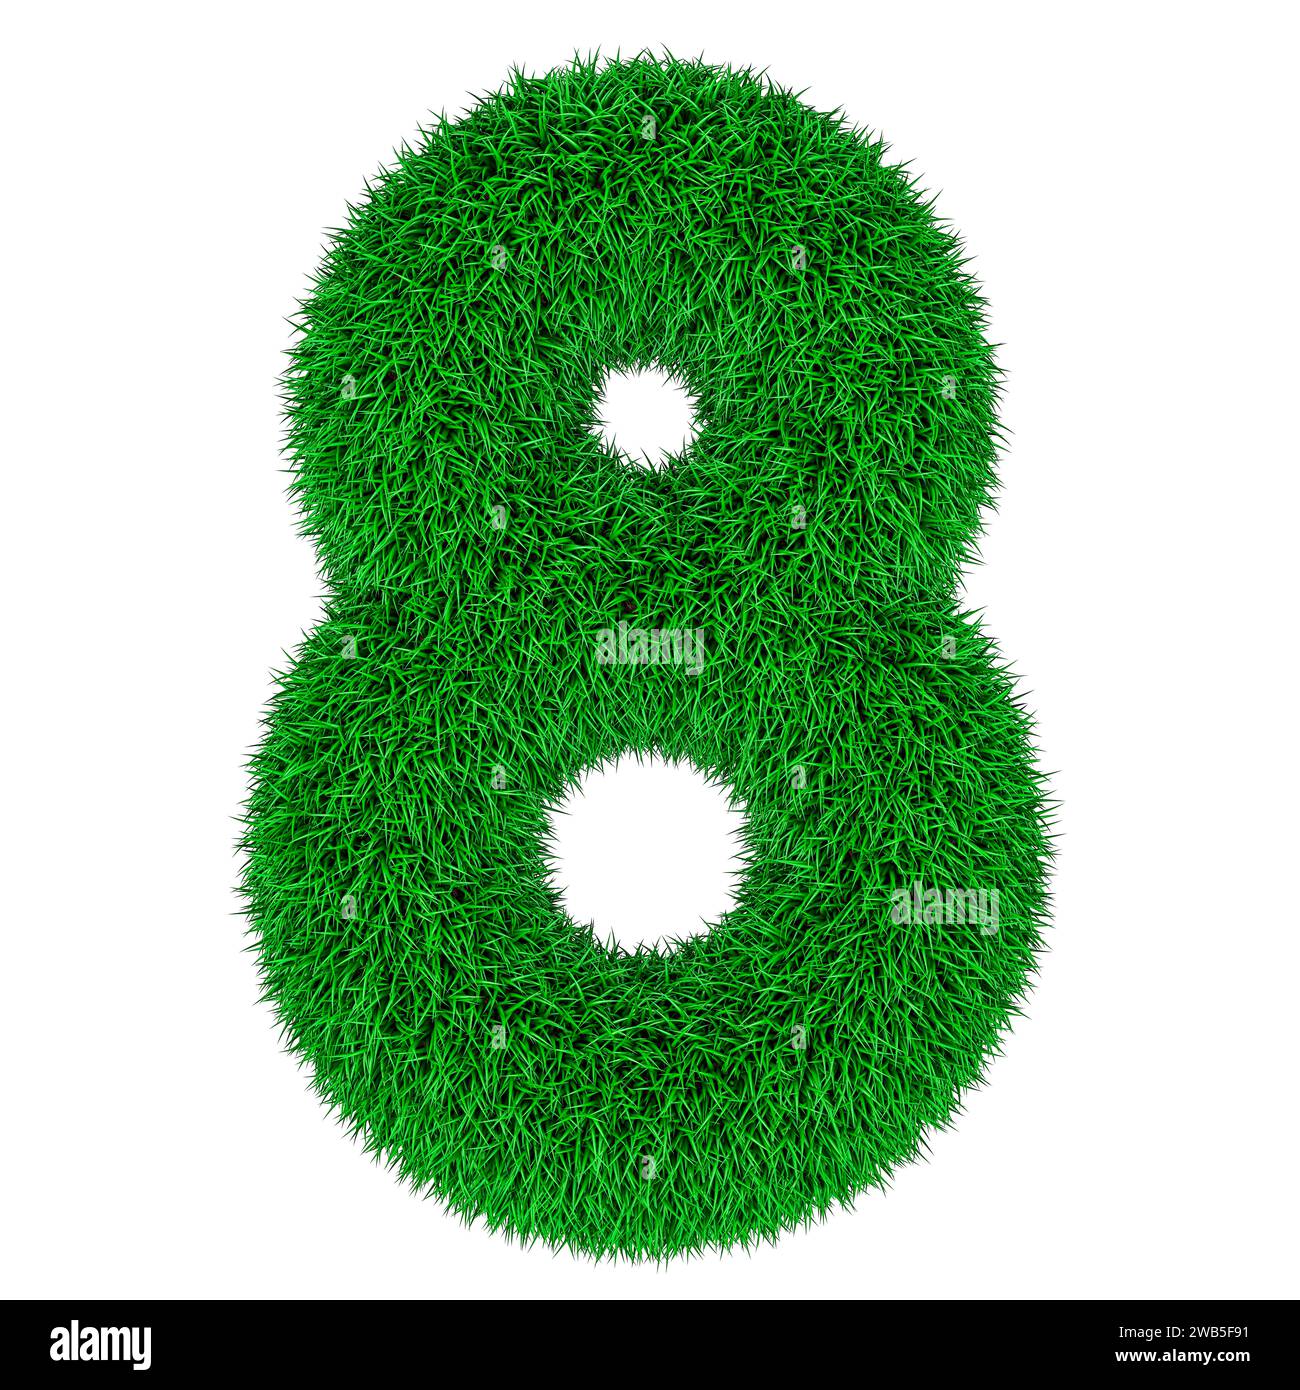 Nummer 8 aus grünem Gras, 3D-Rendering isoliert auf weißem Hintergrund Stockfoto